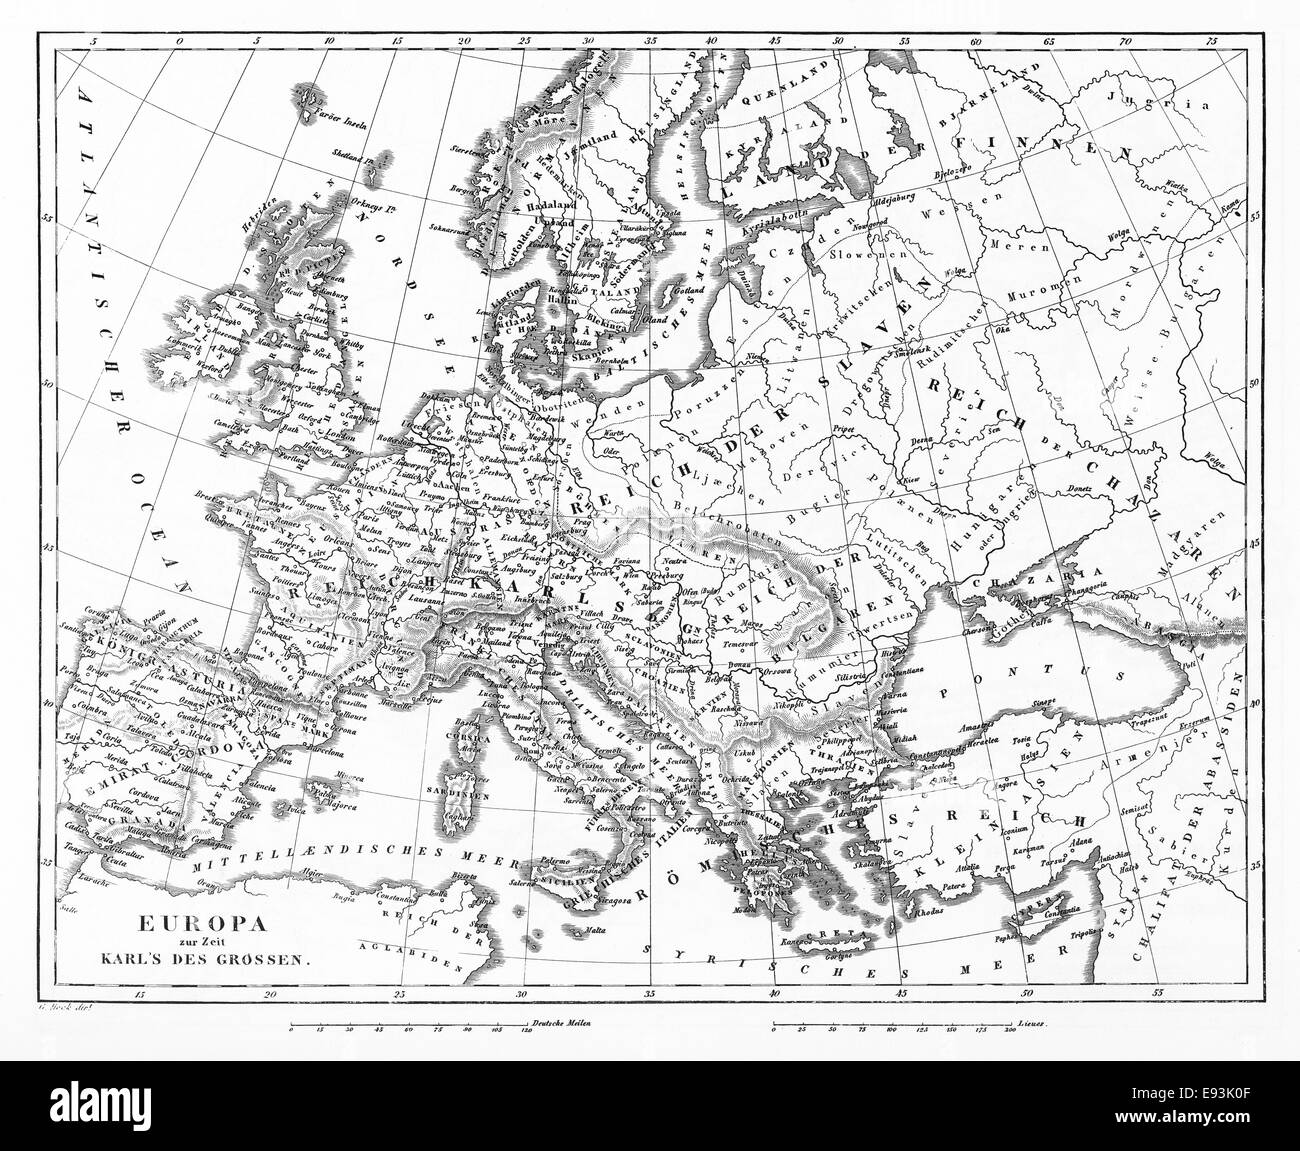 Ilustraciones grabadas de un mapa de Europa bajo Carlomagno de enciclopedia iconográfica de la ciencia, la literatura y el arte, 1851 Foto de stock